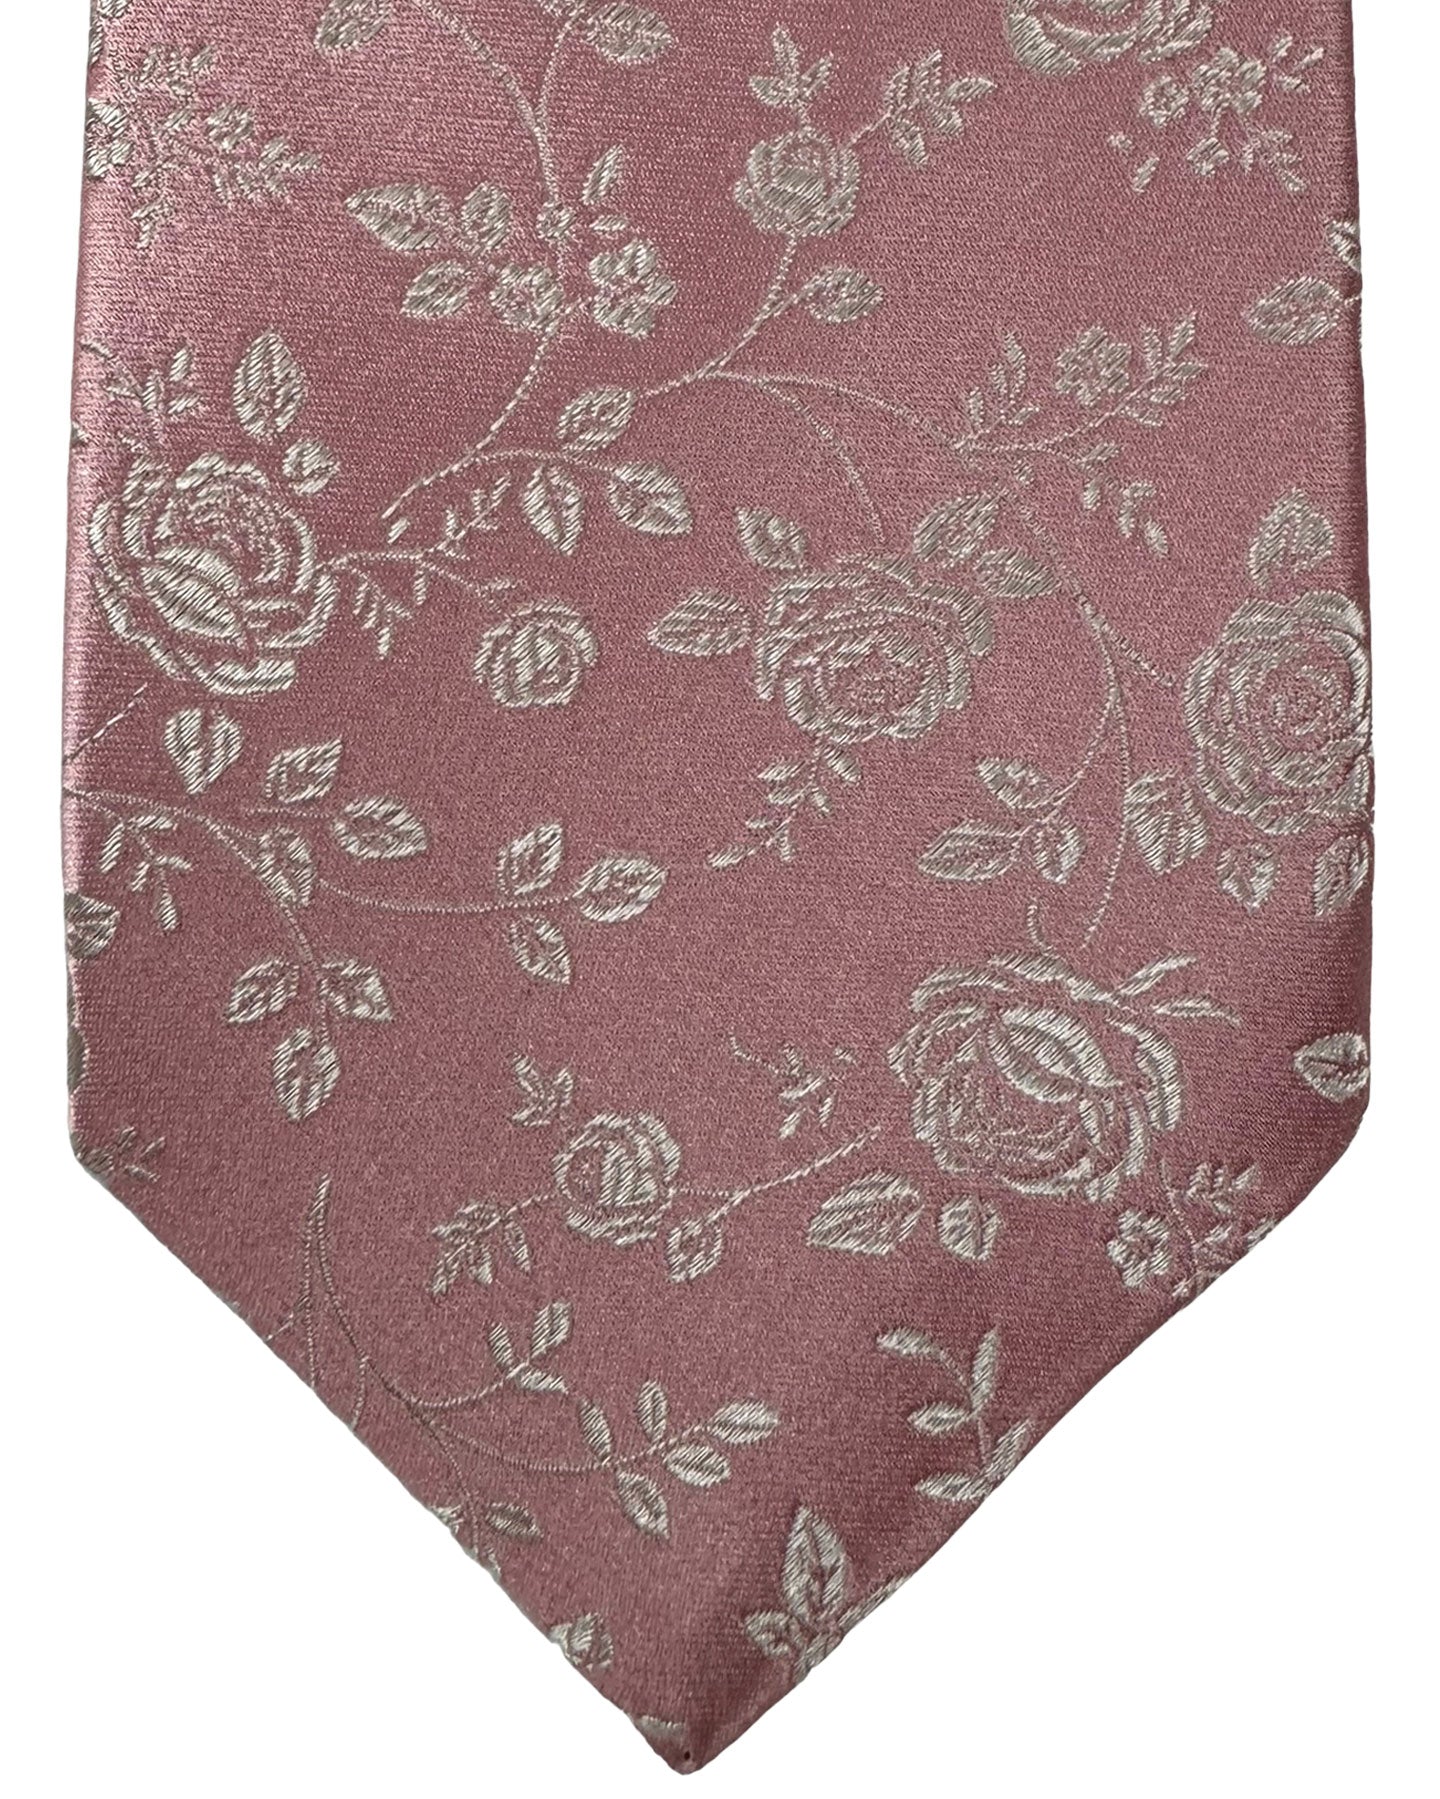 Kiton Silk Tie Pink Silver Floral Design - Sevenfold Necktie